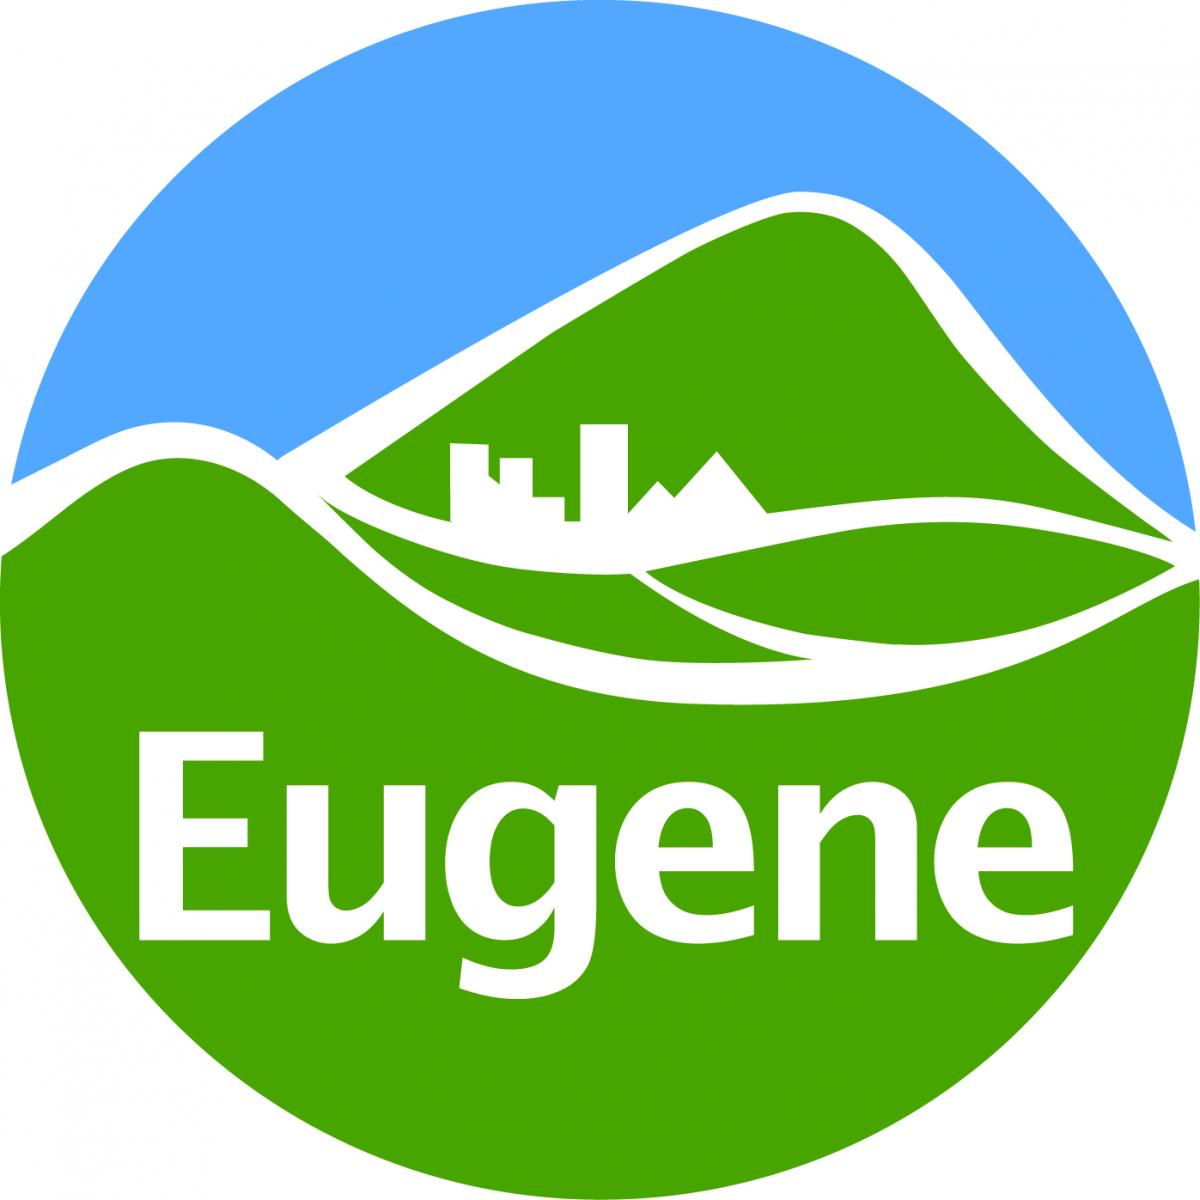 City of Eugene Logo.jpg